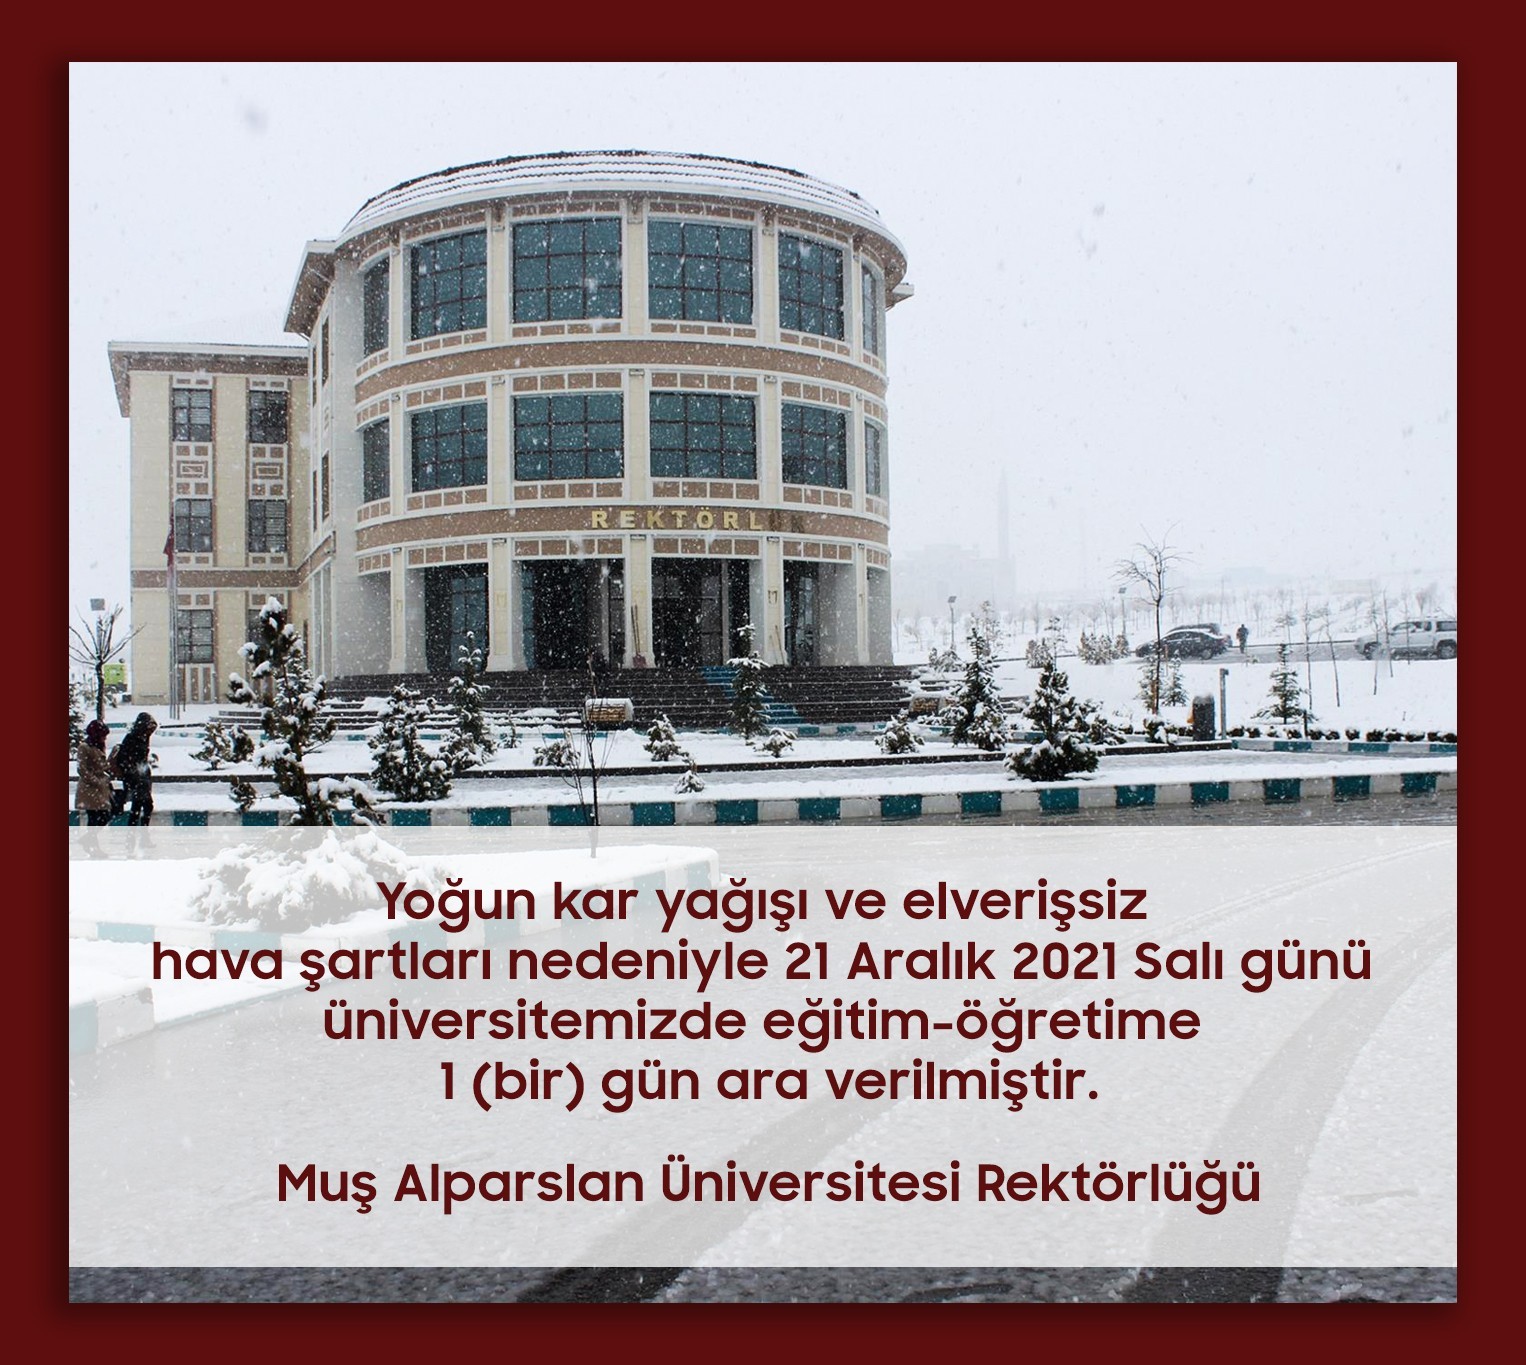 Muş Alparslan Üniversitesi’nde eğitime kar tatili #mus